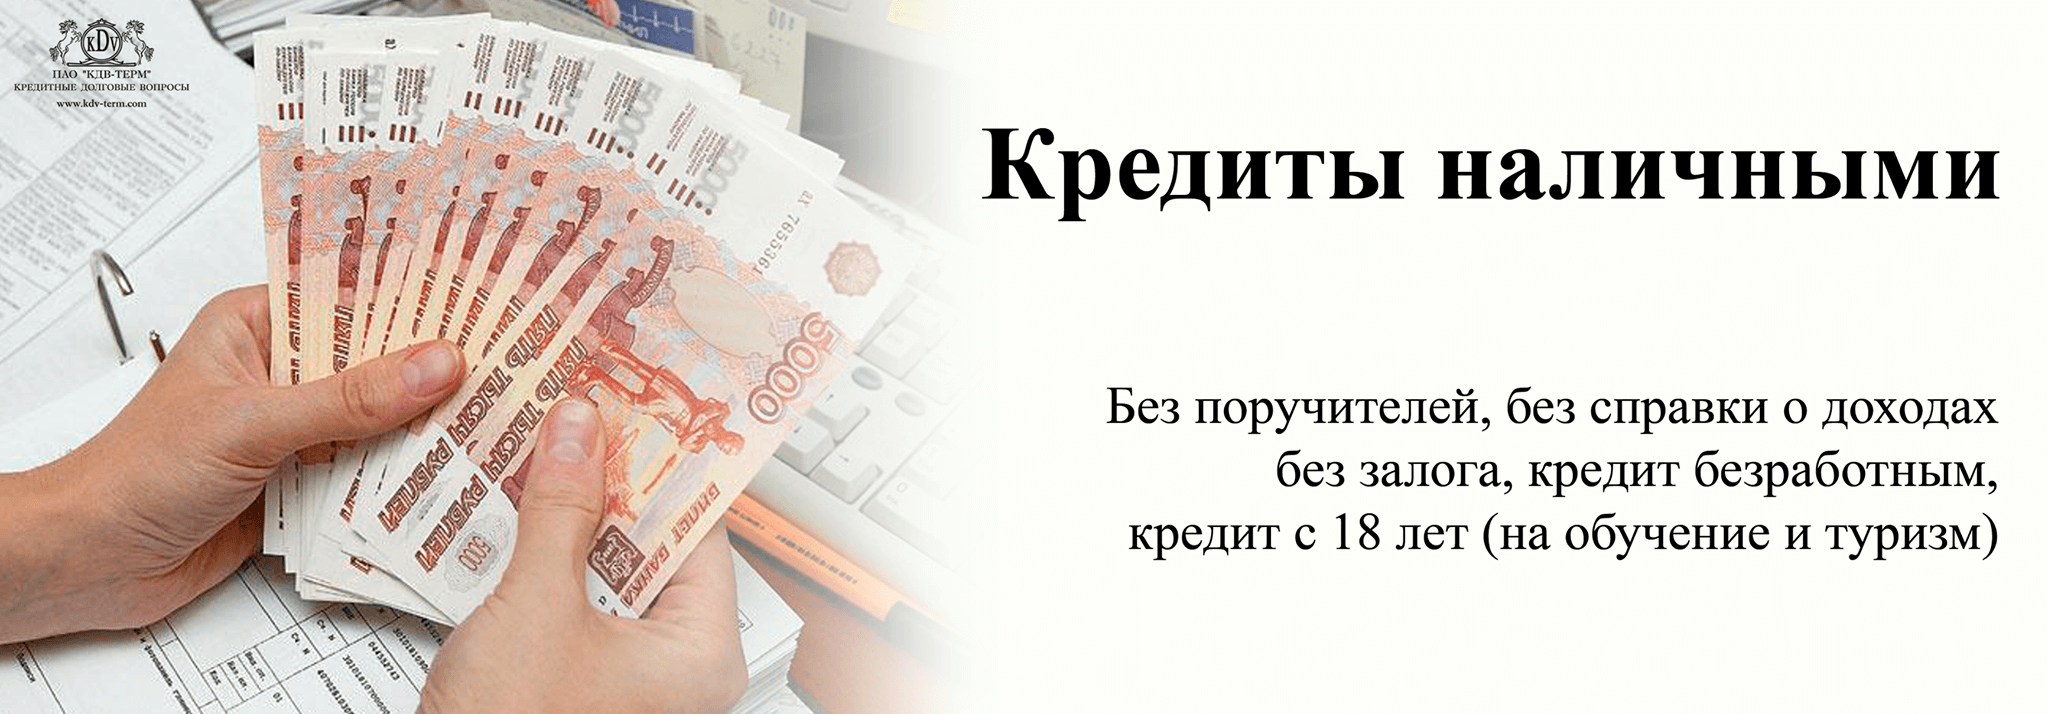 Безотказные Займы наличными в Нижнем Новгороде без проверок по паспорту срочно